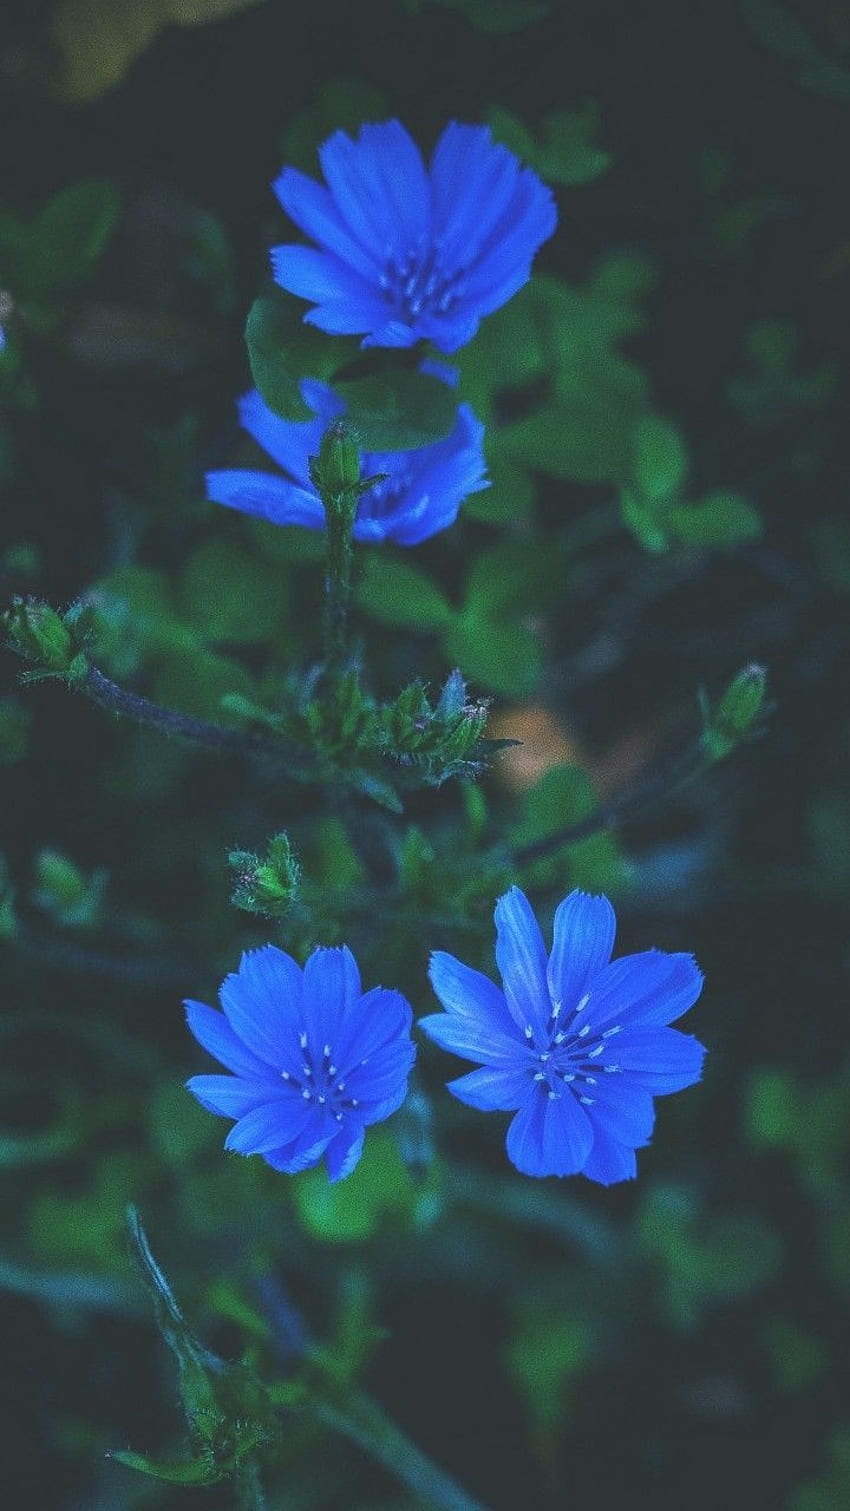 Các bạn yêu hoa chắc chắn không nên bỏ qua hình nền hoa xanh thơm ngát này. Những sắc xanh của những bông hoa được thể hiện tuyệt đối chân thật, bạn sẽ có cảm giác như đang ngắm những sinh vật sống động. 